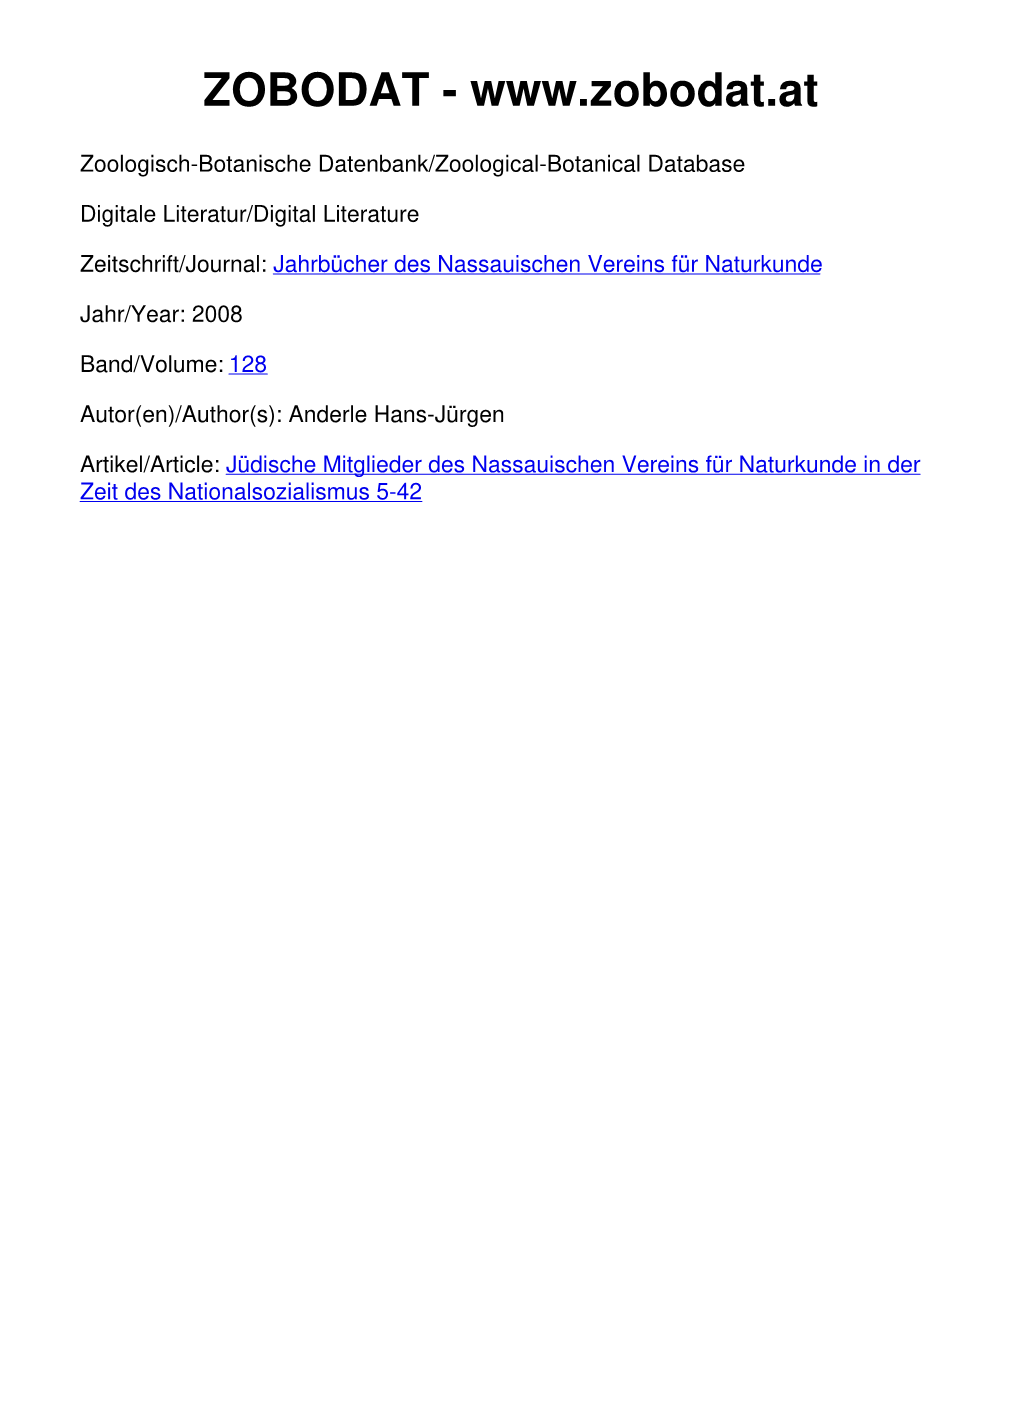 Jüdische Mitglieder Des Nassauischen Vereins Für Naturkunde in Der Zeit Des Nationalsozialismus 5-42 005-042-Anderle 03.12.2007 10:07 Uhr Seite 5